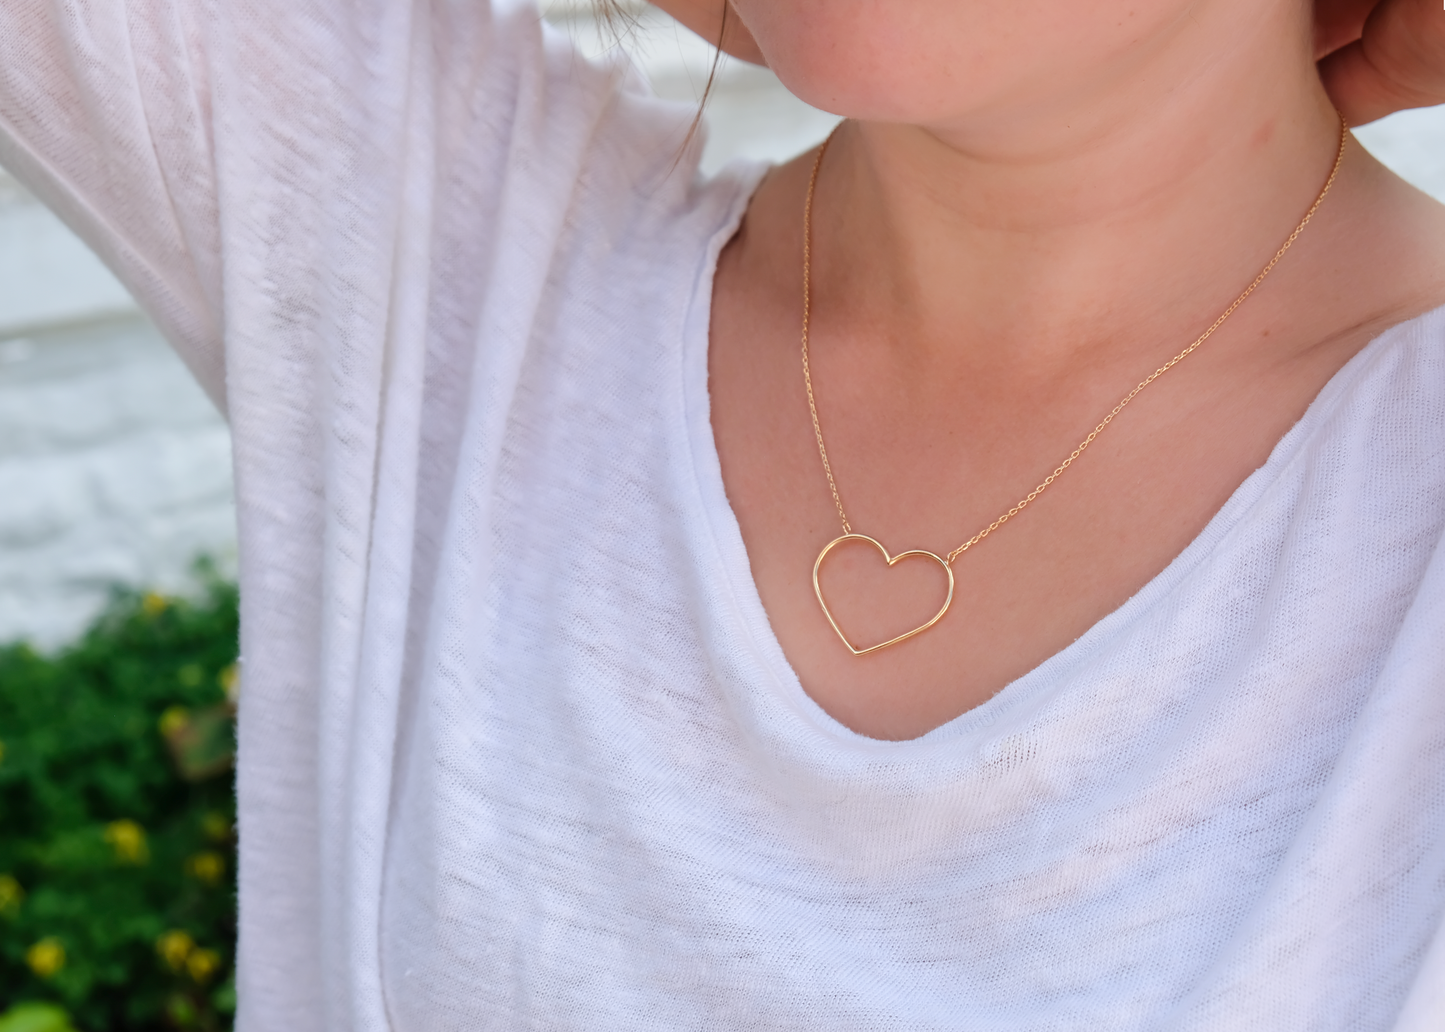 Halskette Herz Vergoldet - Herzkette für Frauen